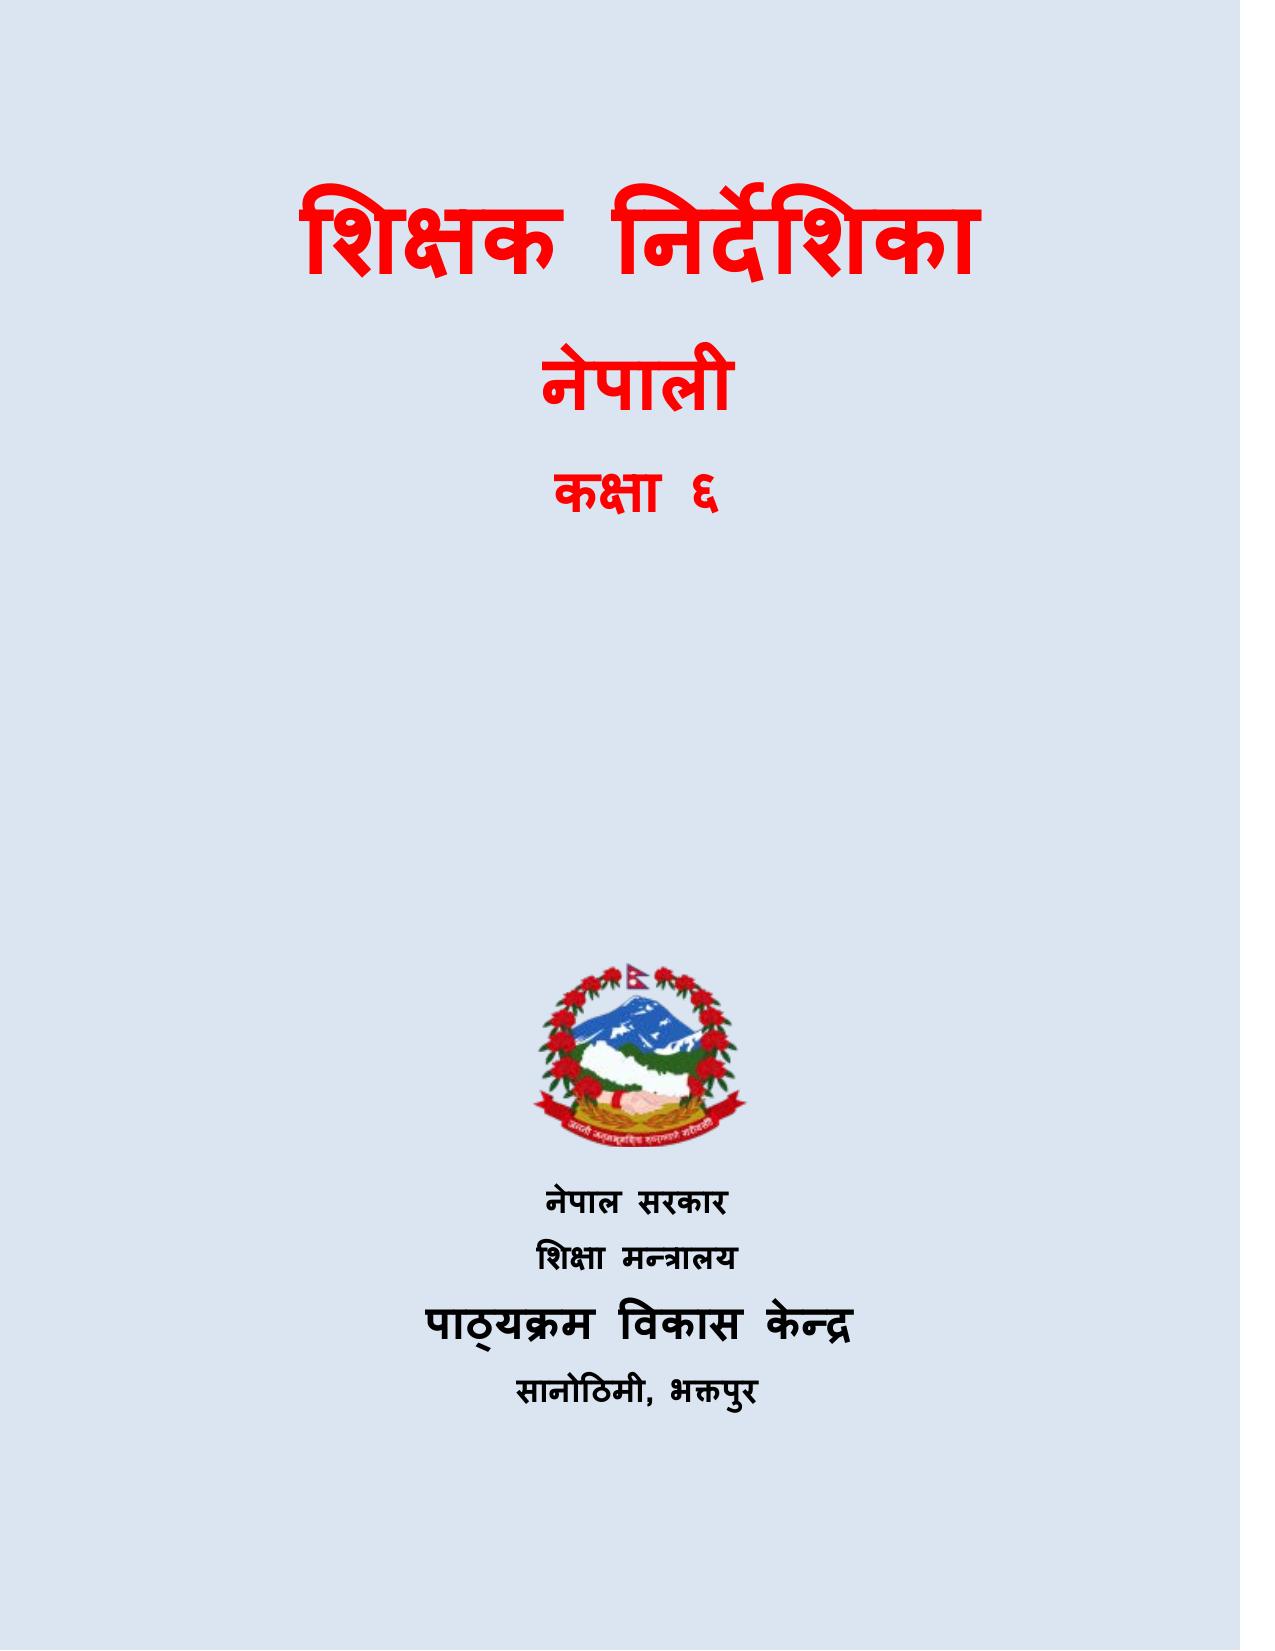 CDC 2017 - नेपाली शिक्षक निर्देशिका कक्षा ६